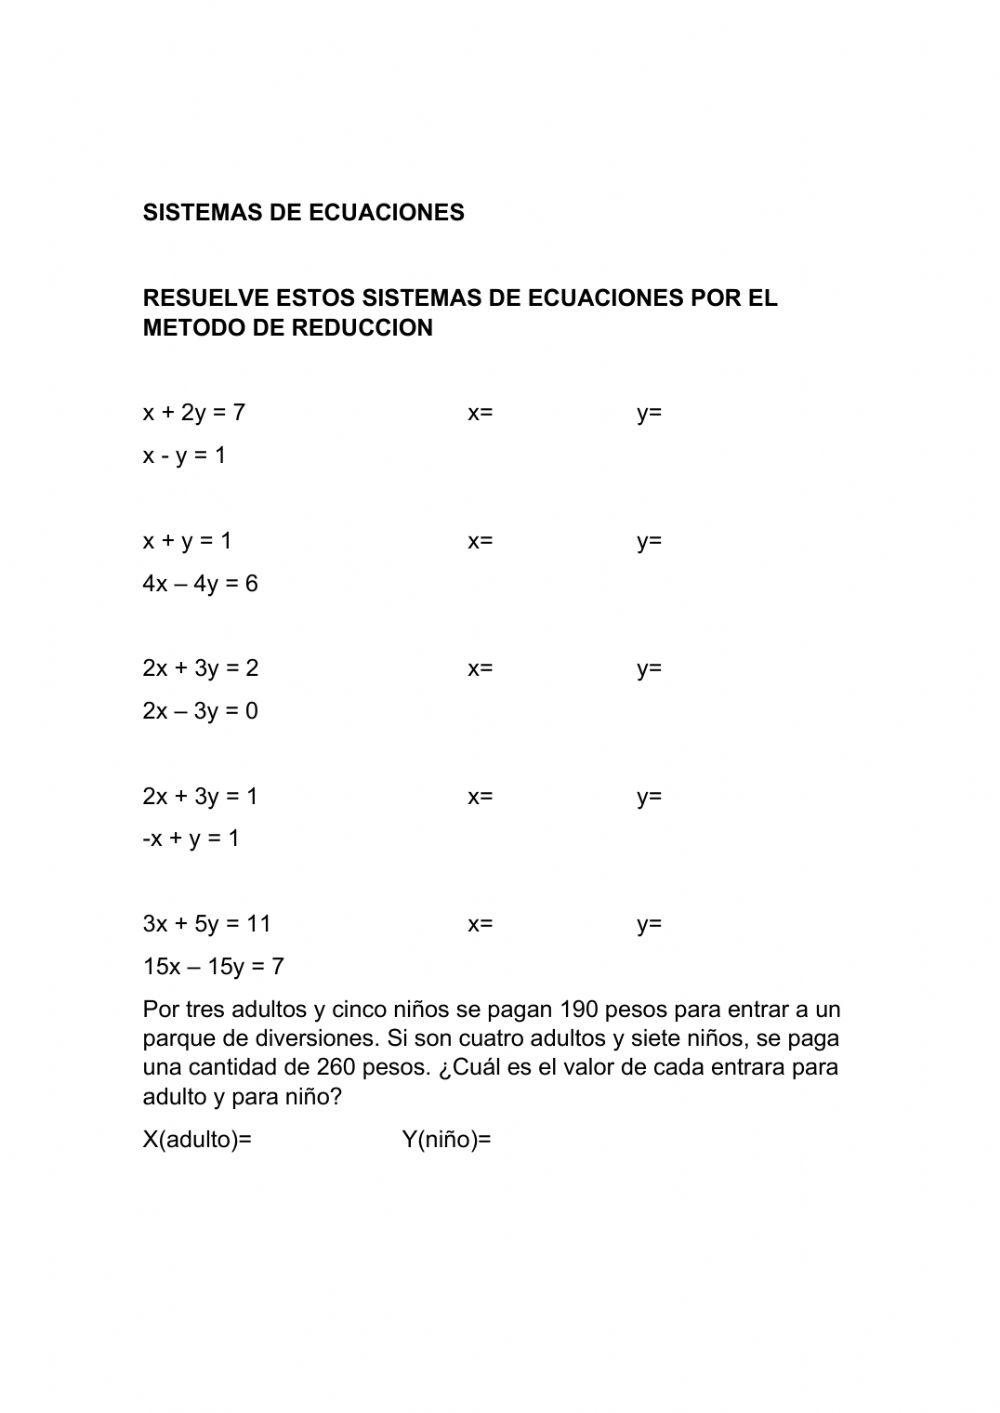 Sistemas de ecuaciones